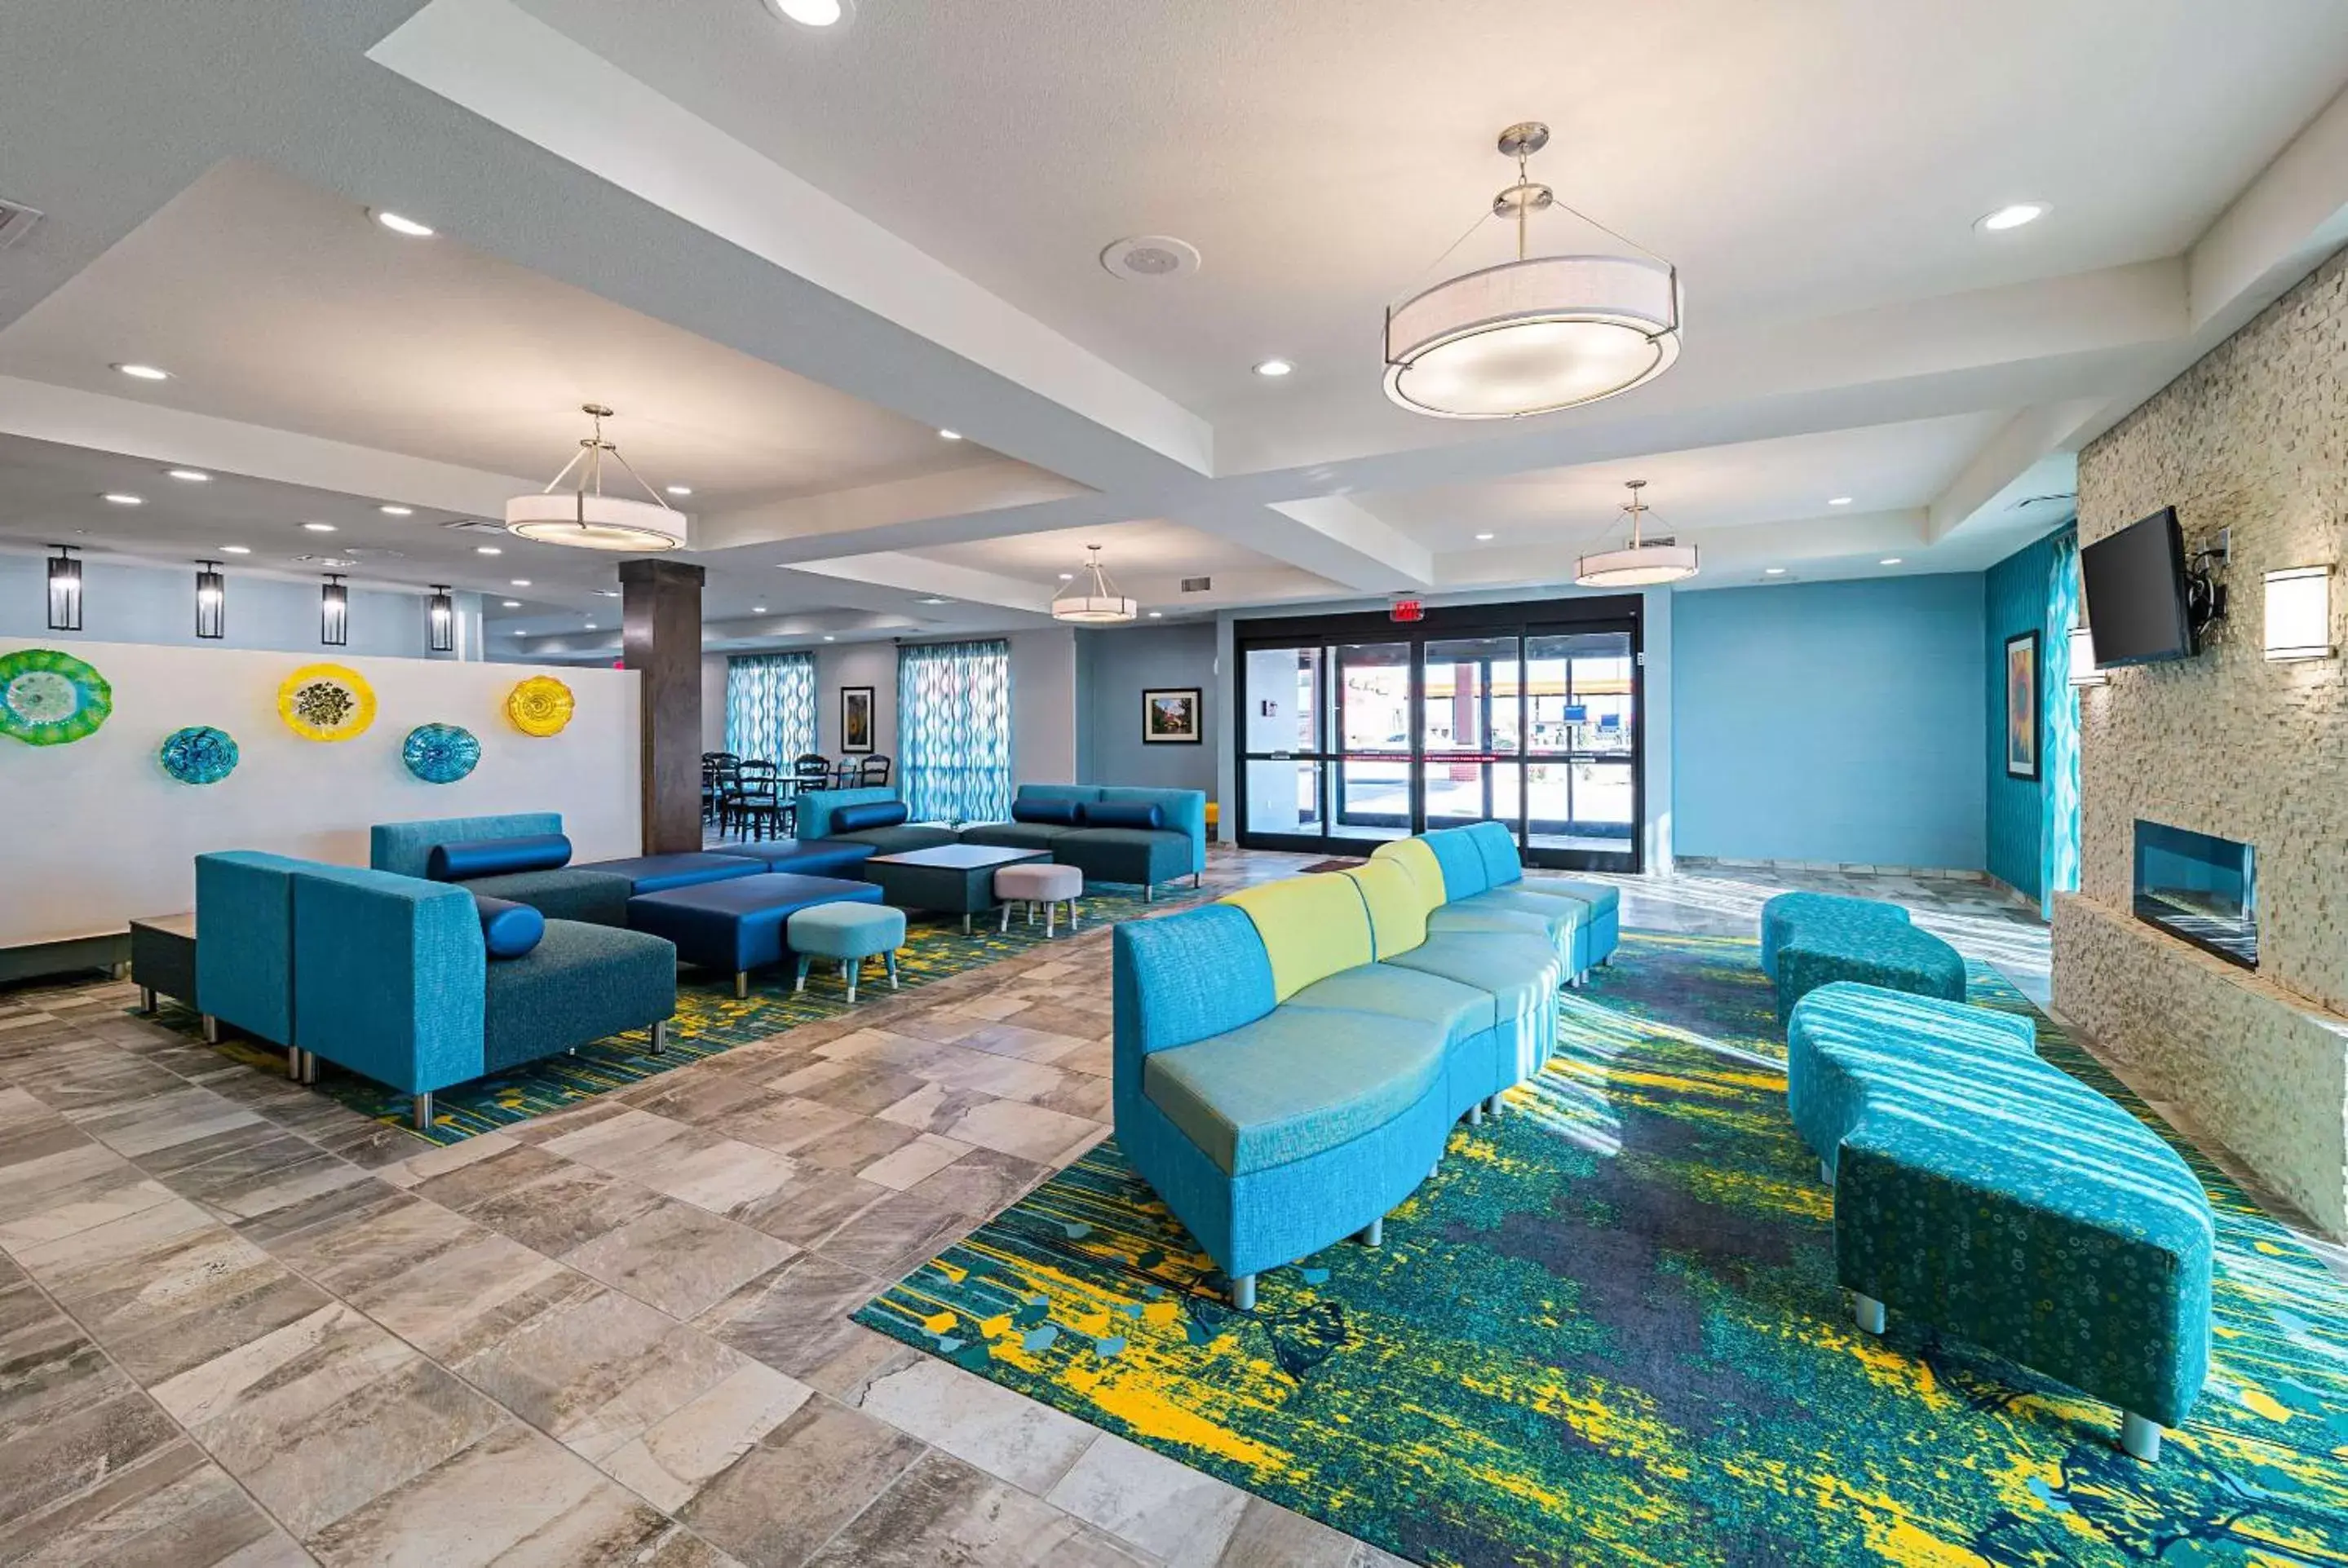 Lobby or reception in Comfort Inn & Suites Oklahoma City near Bricktown